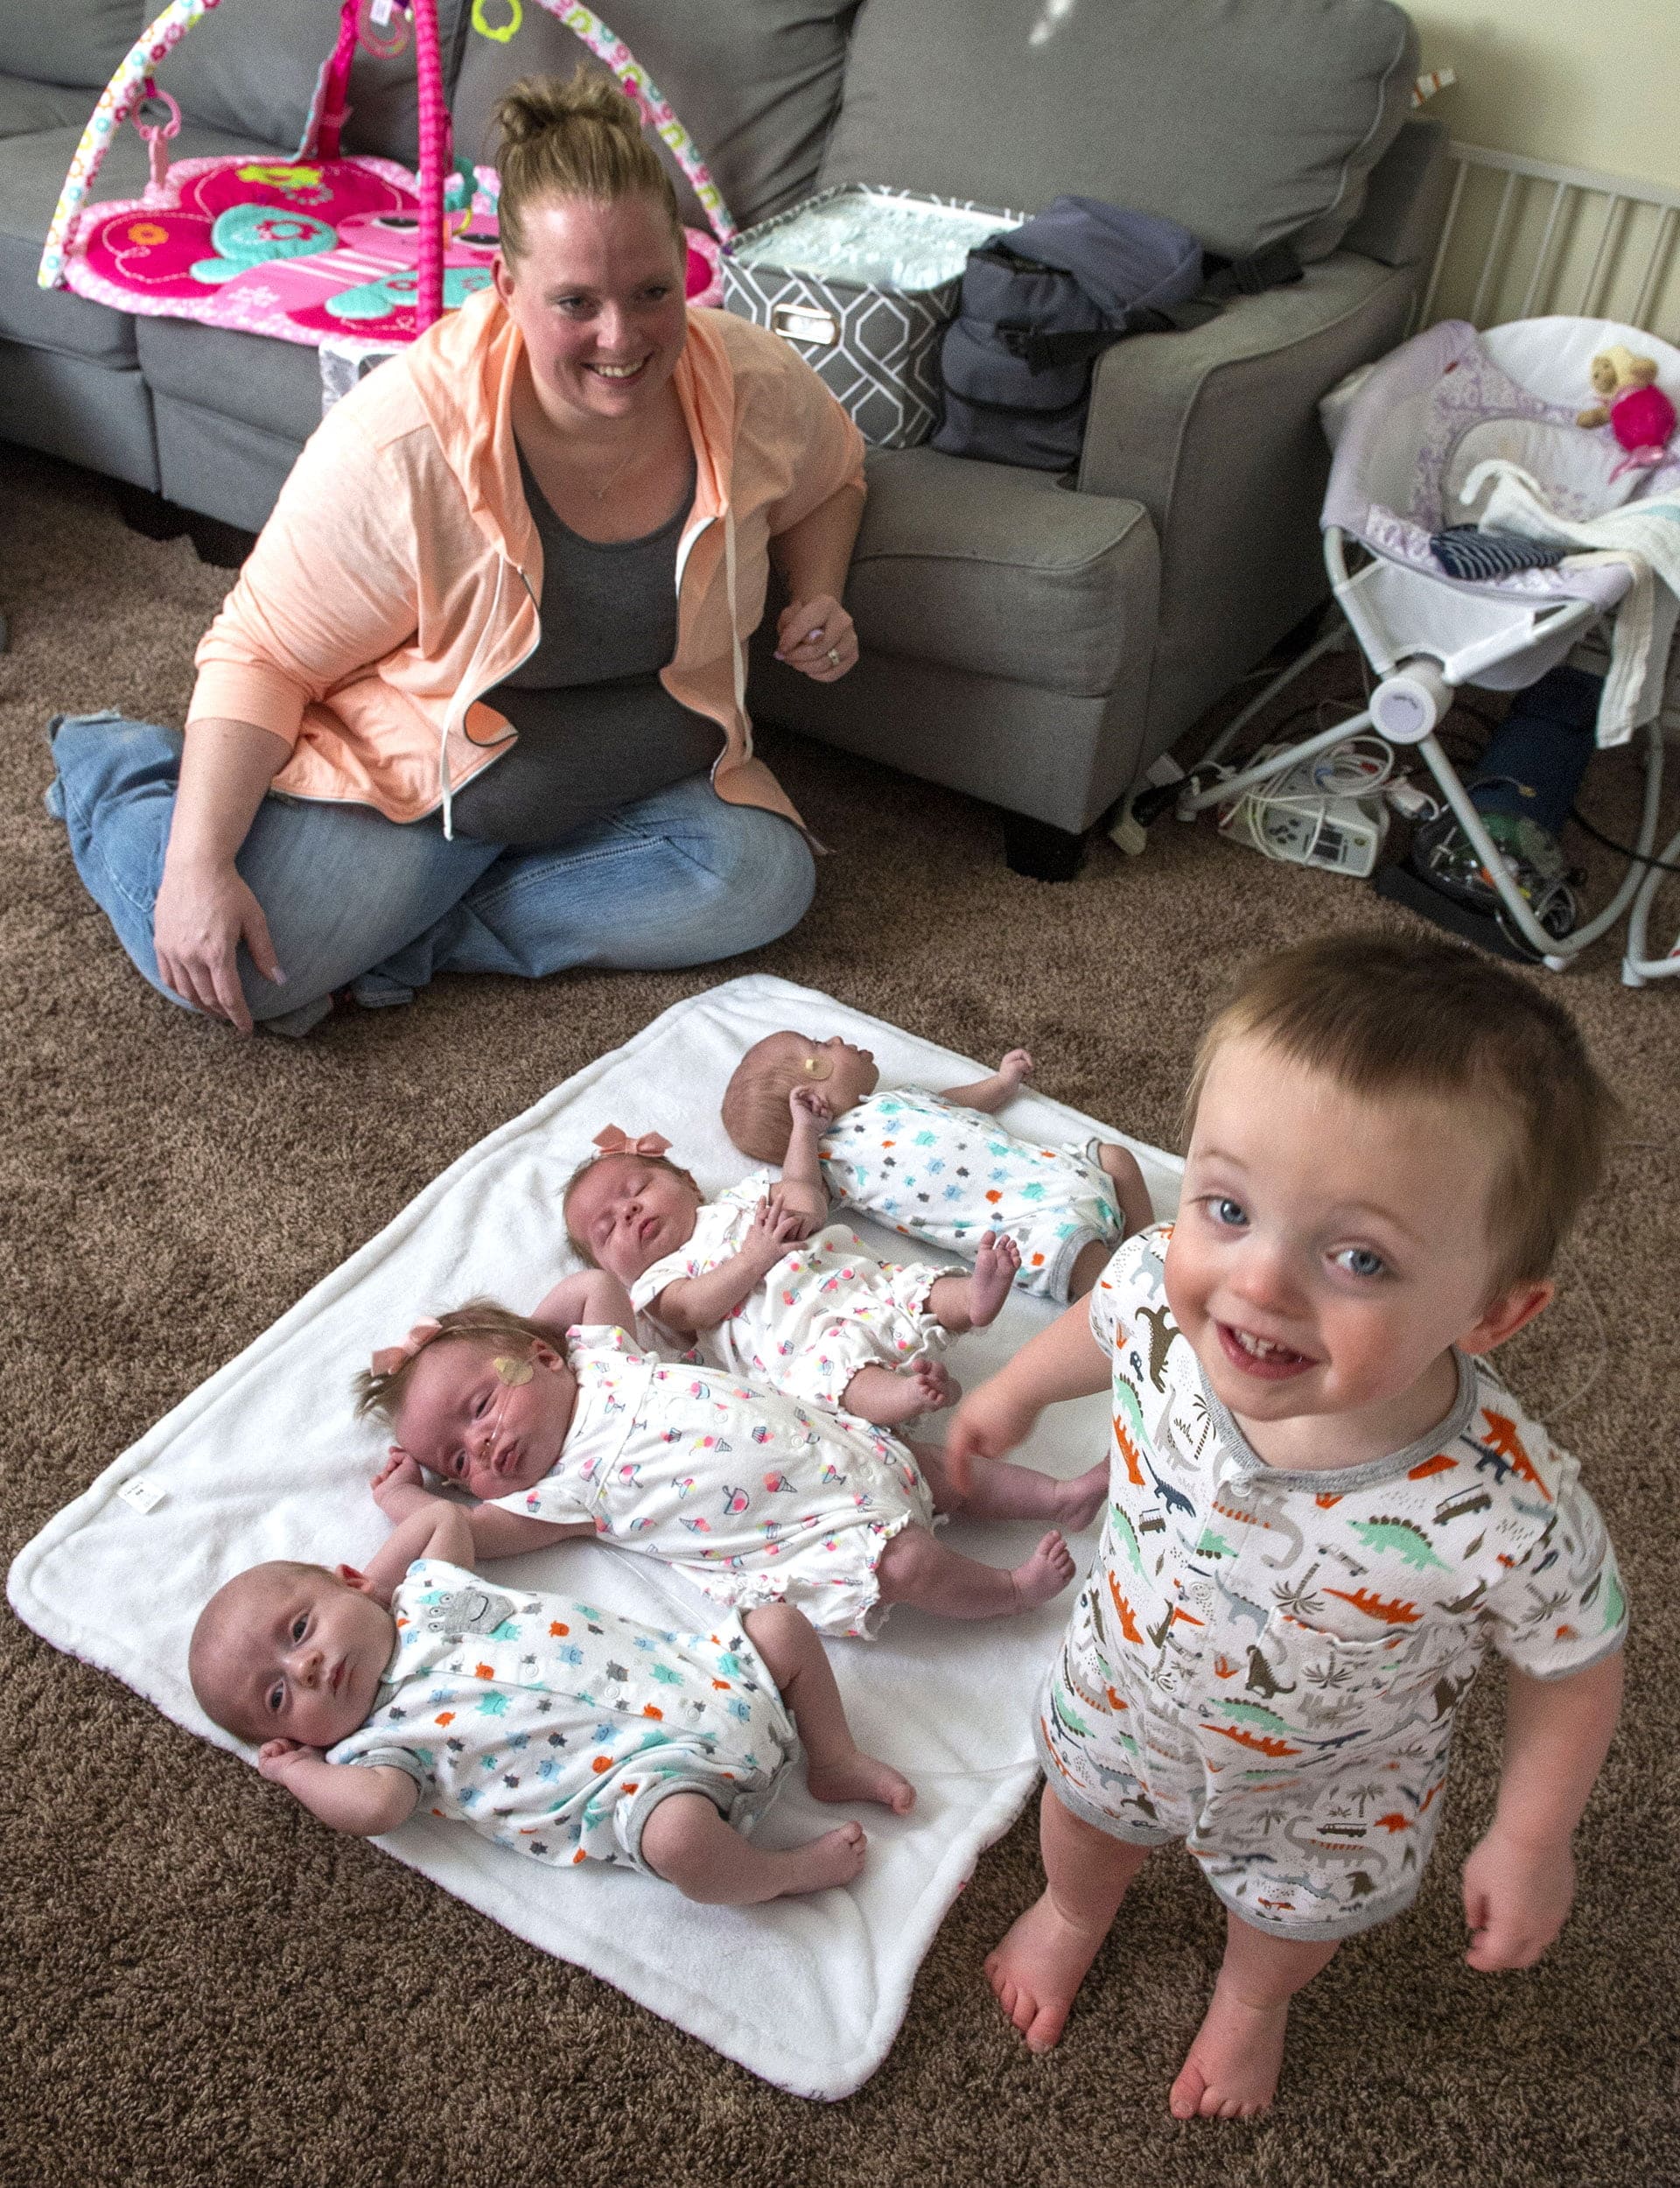 S-a născut din surori triplete, apoi a devenit și ea mamă și a adus pe lume cvadrupleți: "Medicii mi-au spus că nu pot concepe natural copii"